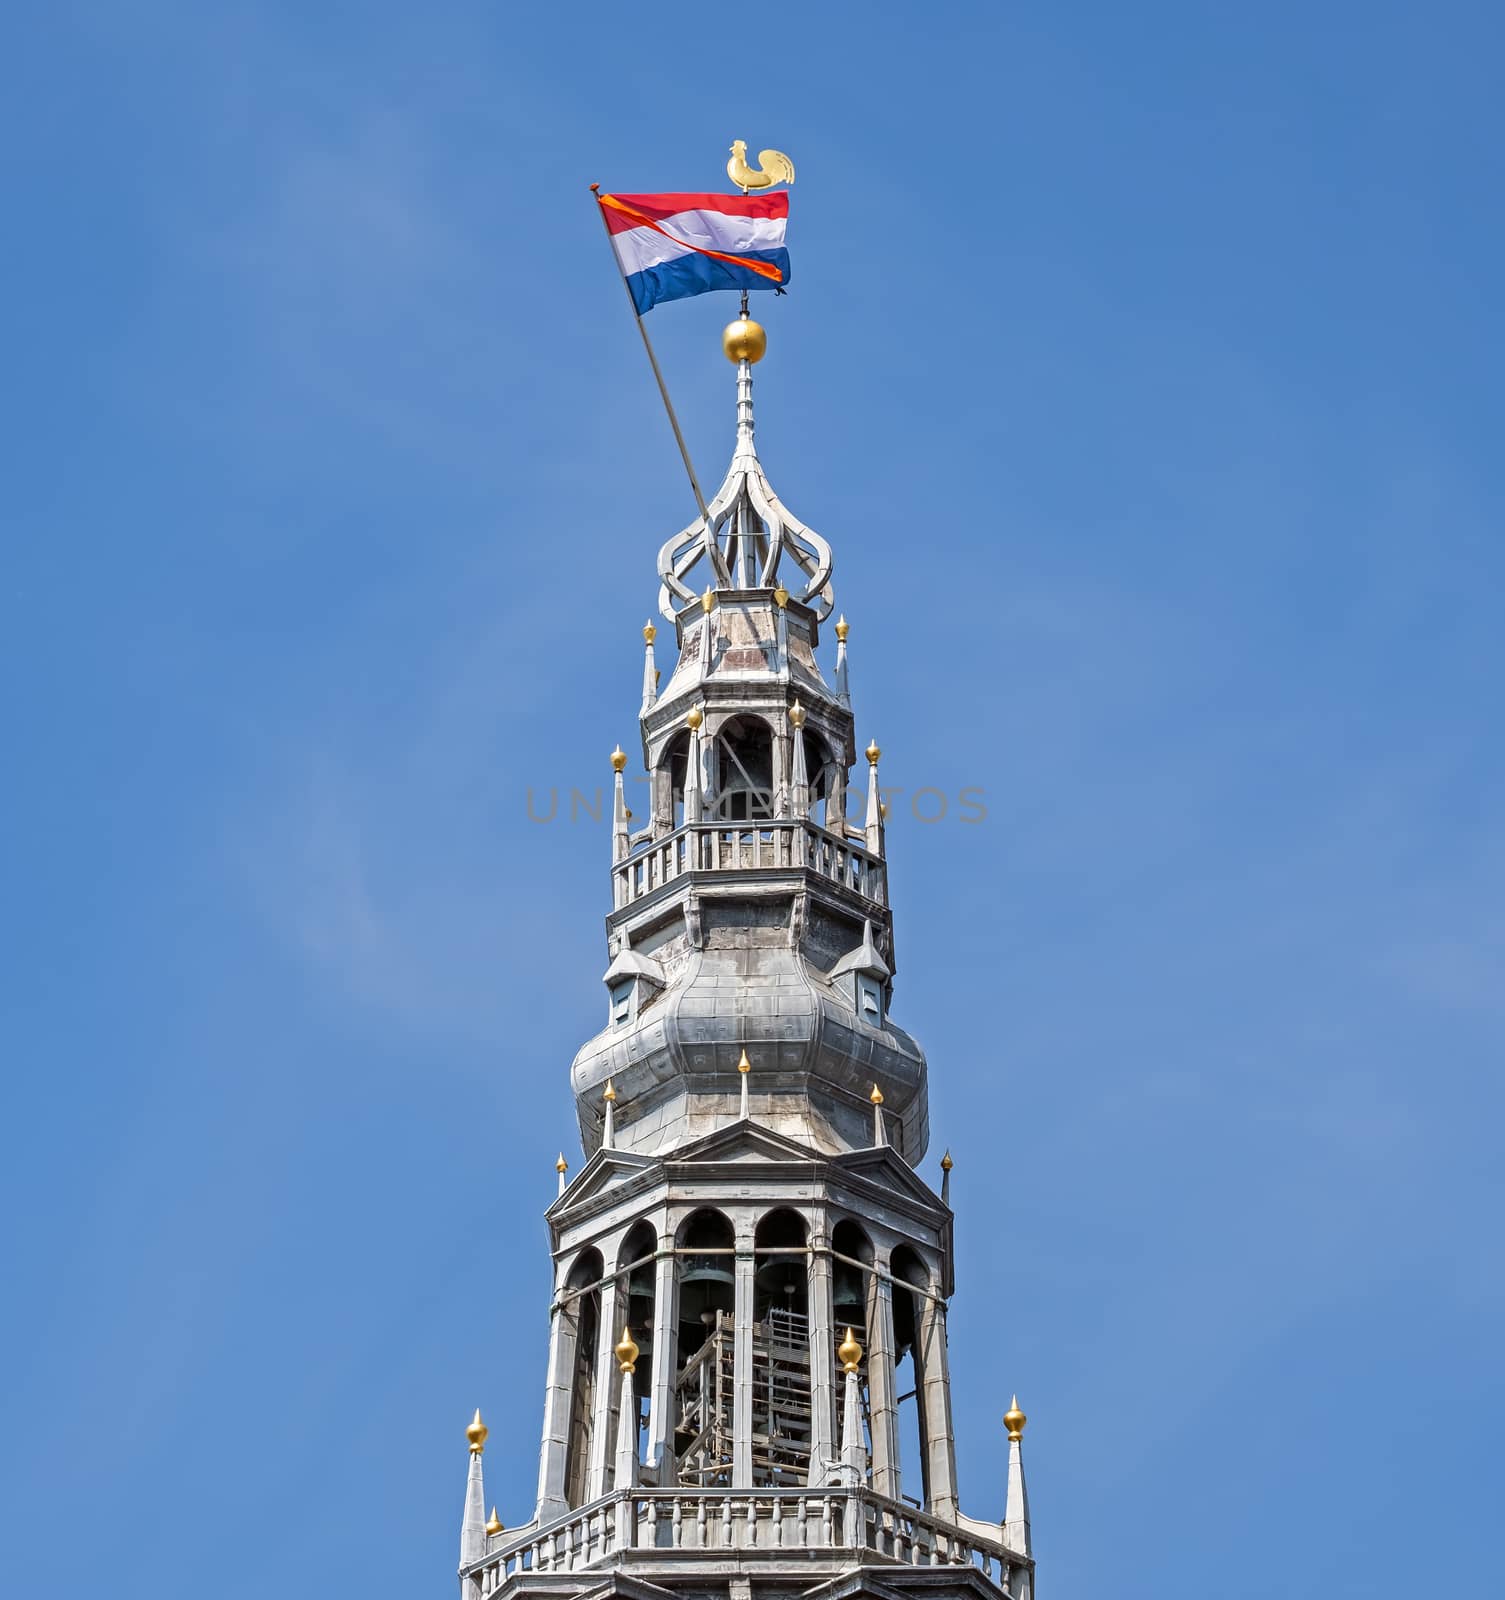 Tower of the Noorderkerk in Amsterdam the Netherlands at Kingsda by devy